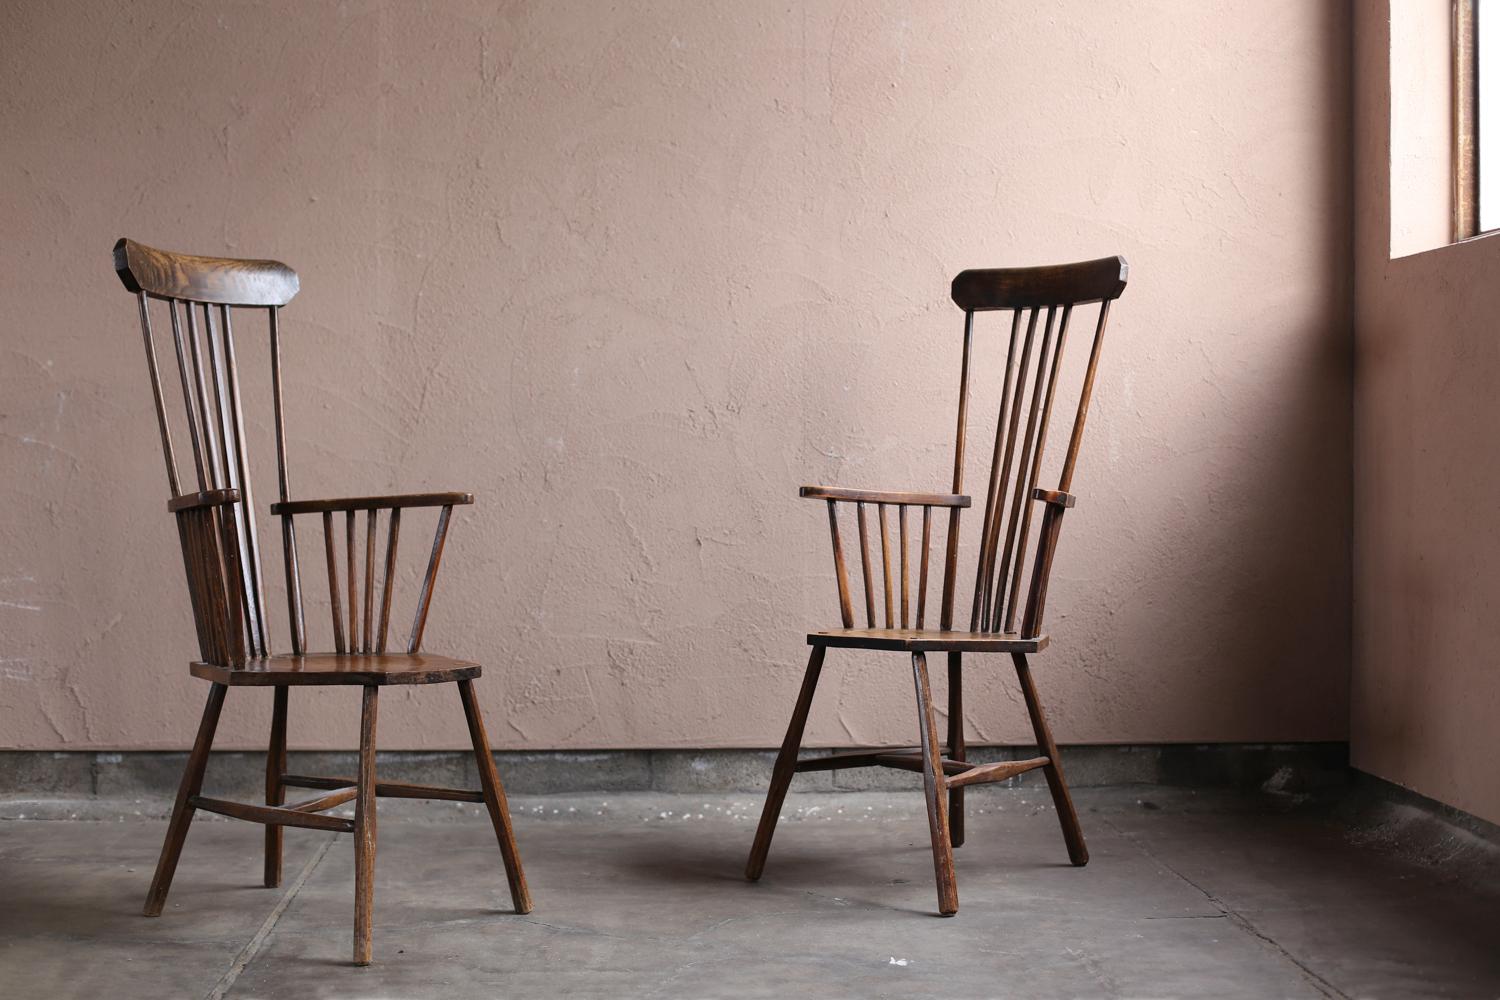 Ein Windsor-Stuhl mit hoher Rückenlehne und einem sehr seltenen sechseckigen Sitz. Ein exzellentes Design mit einem Gefühl von Spannung. Ein antikes Produkt mit einer sehr guten Gesamtatmosphäre, einschließlich des Gefühls der Abnutzung. Die hohe